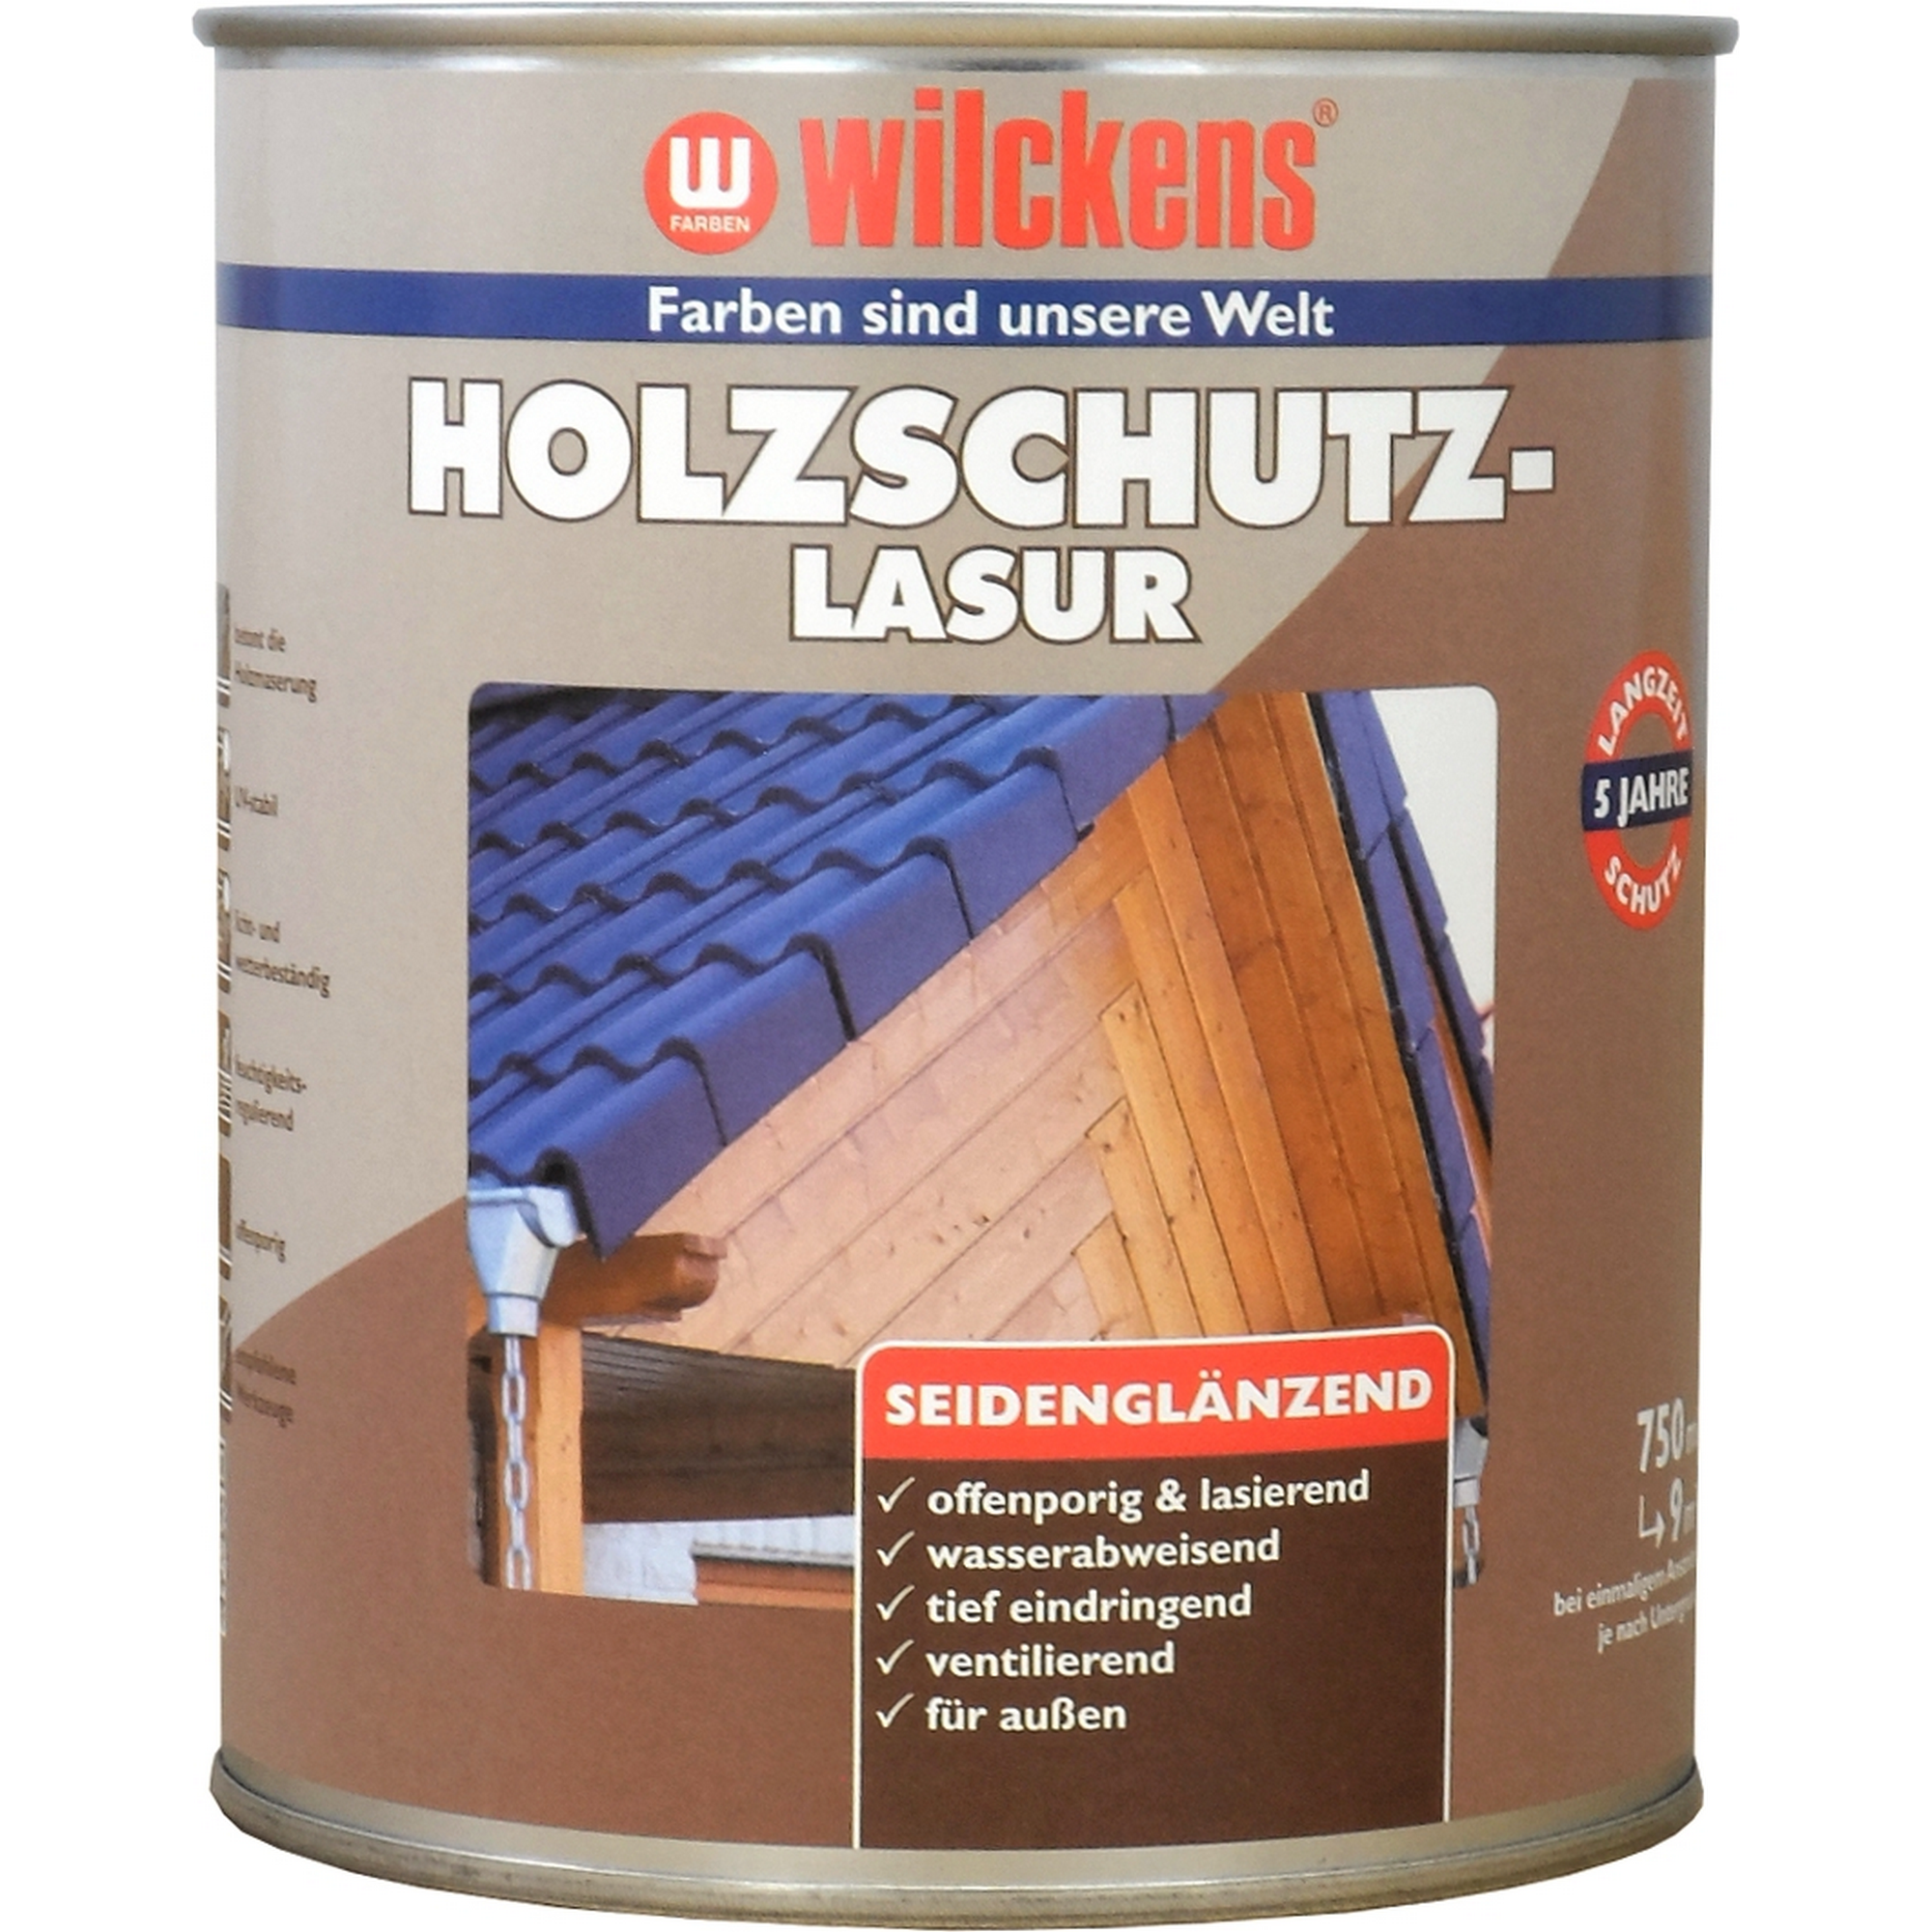 Holzschutzlasur farblos 750 ml + product picture